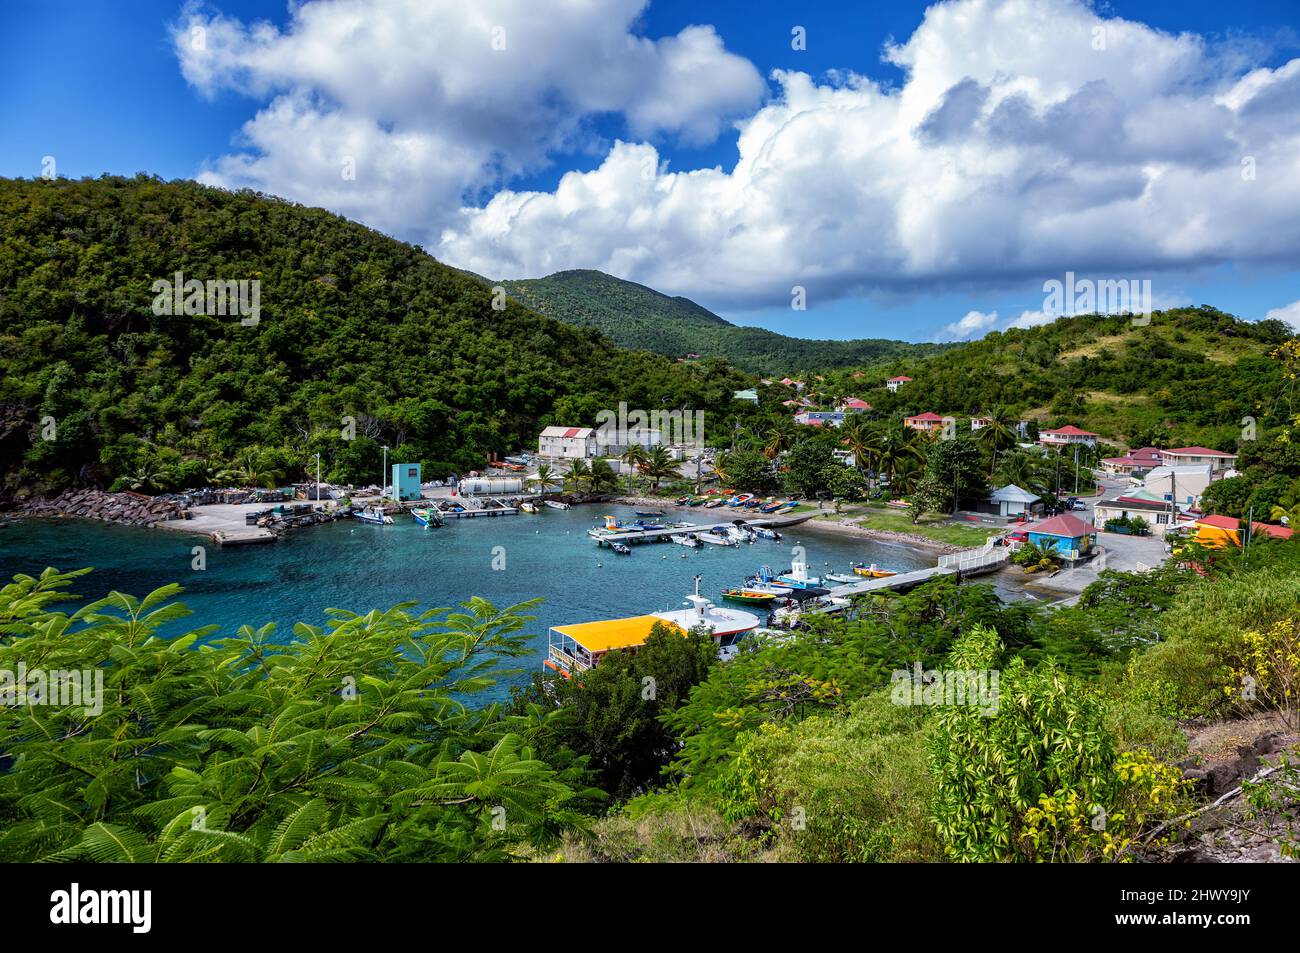 Port of the island of Terre-de-Bas, Iles des Saintes, Les Saintes, Guadeloupe, Lesser Antilles, Caribbean. Stock Photo